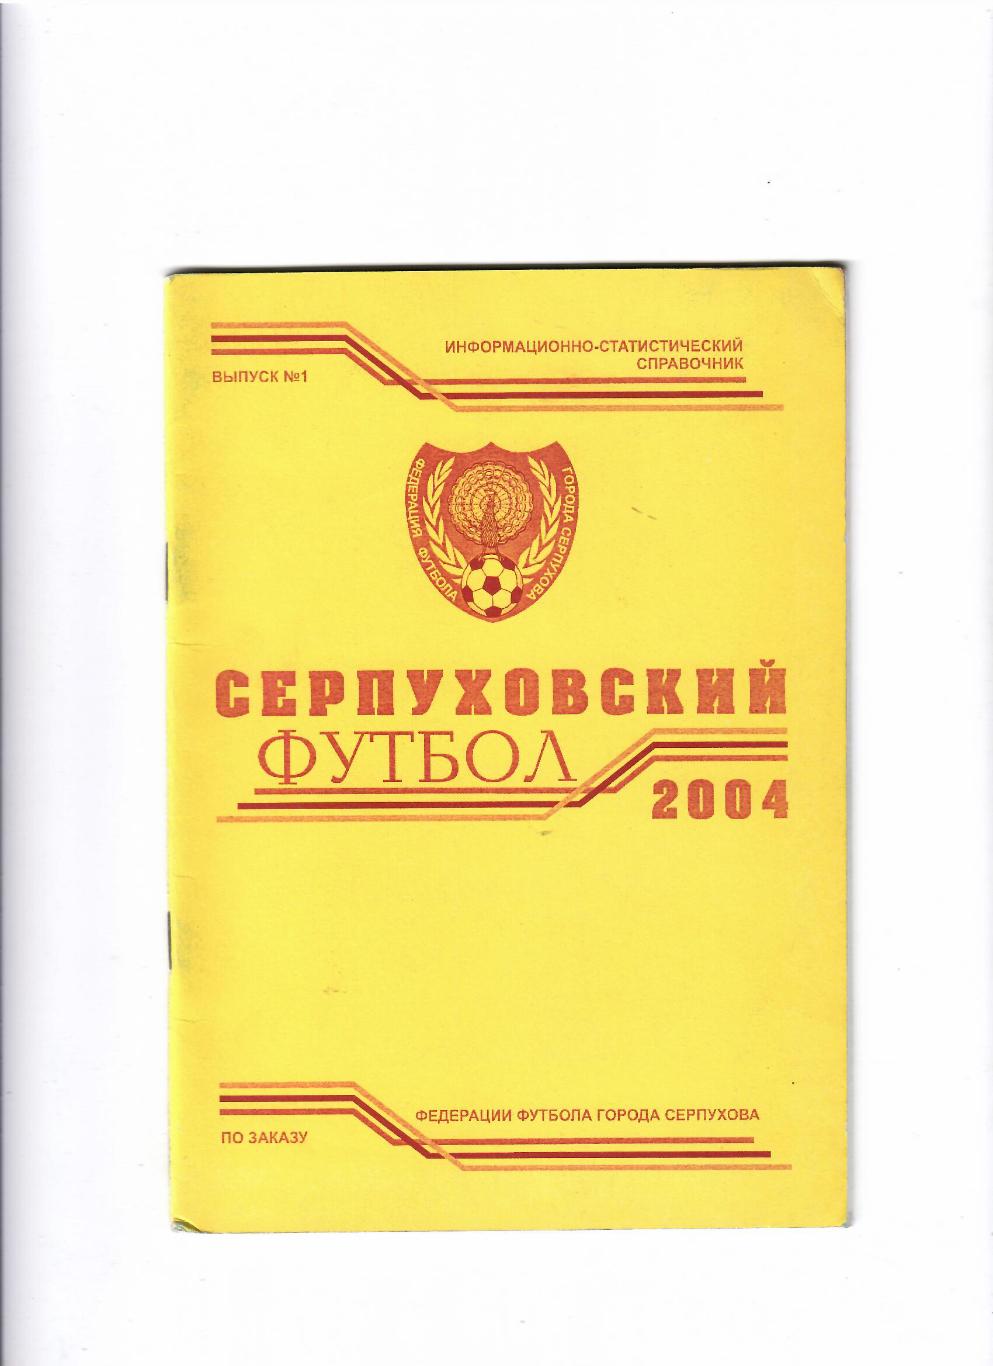 К/С Серпуховский футбол 2004